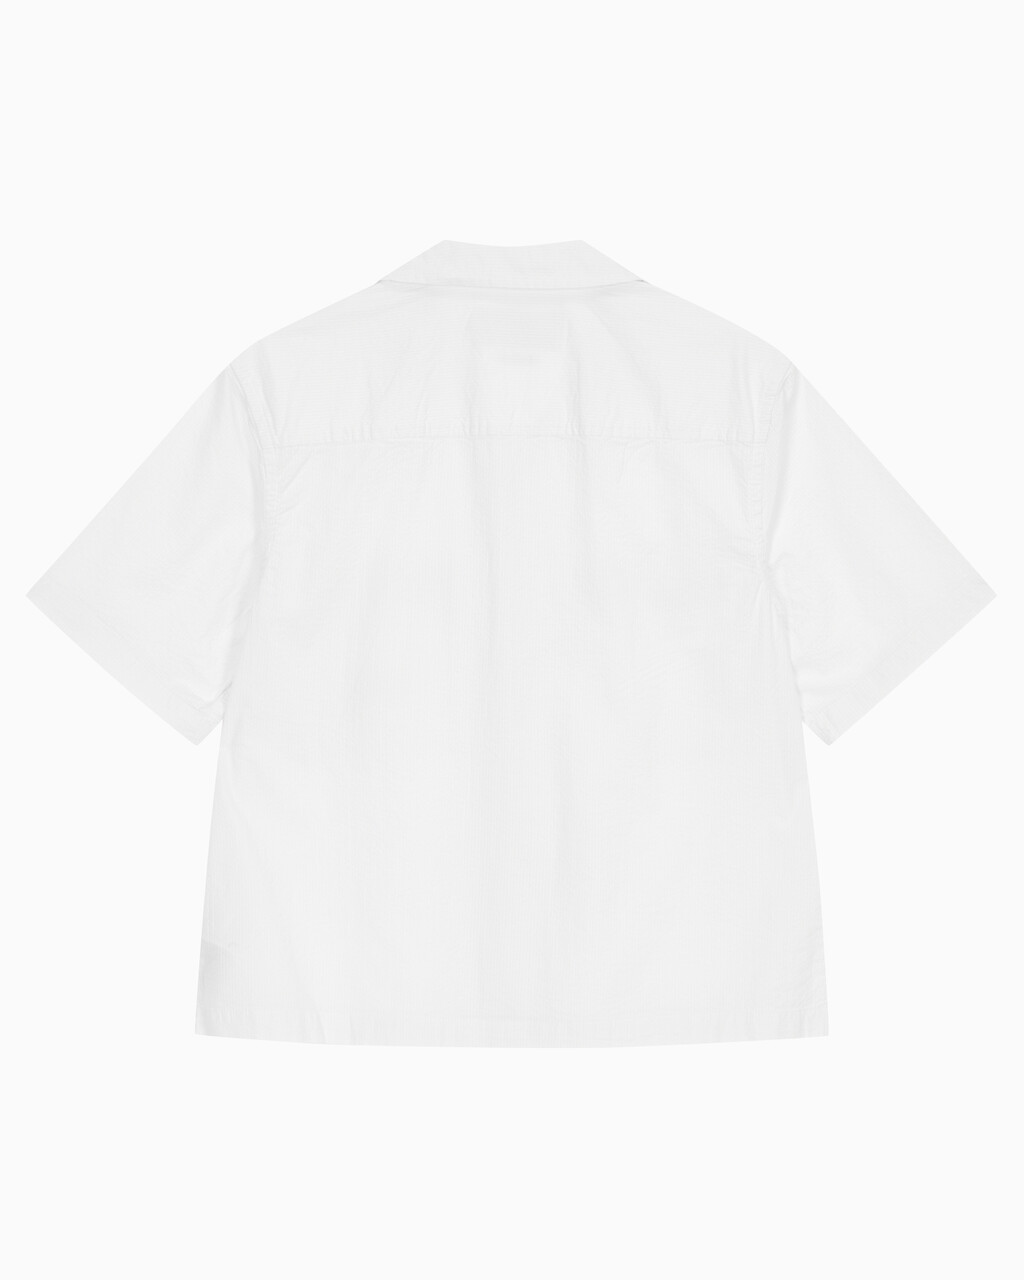 Buy 남성 릴렉스핏 시어서커 반팔 셔츠 in color BRIGHT WHITE